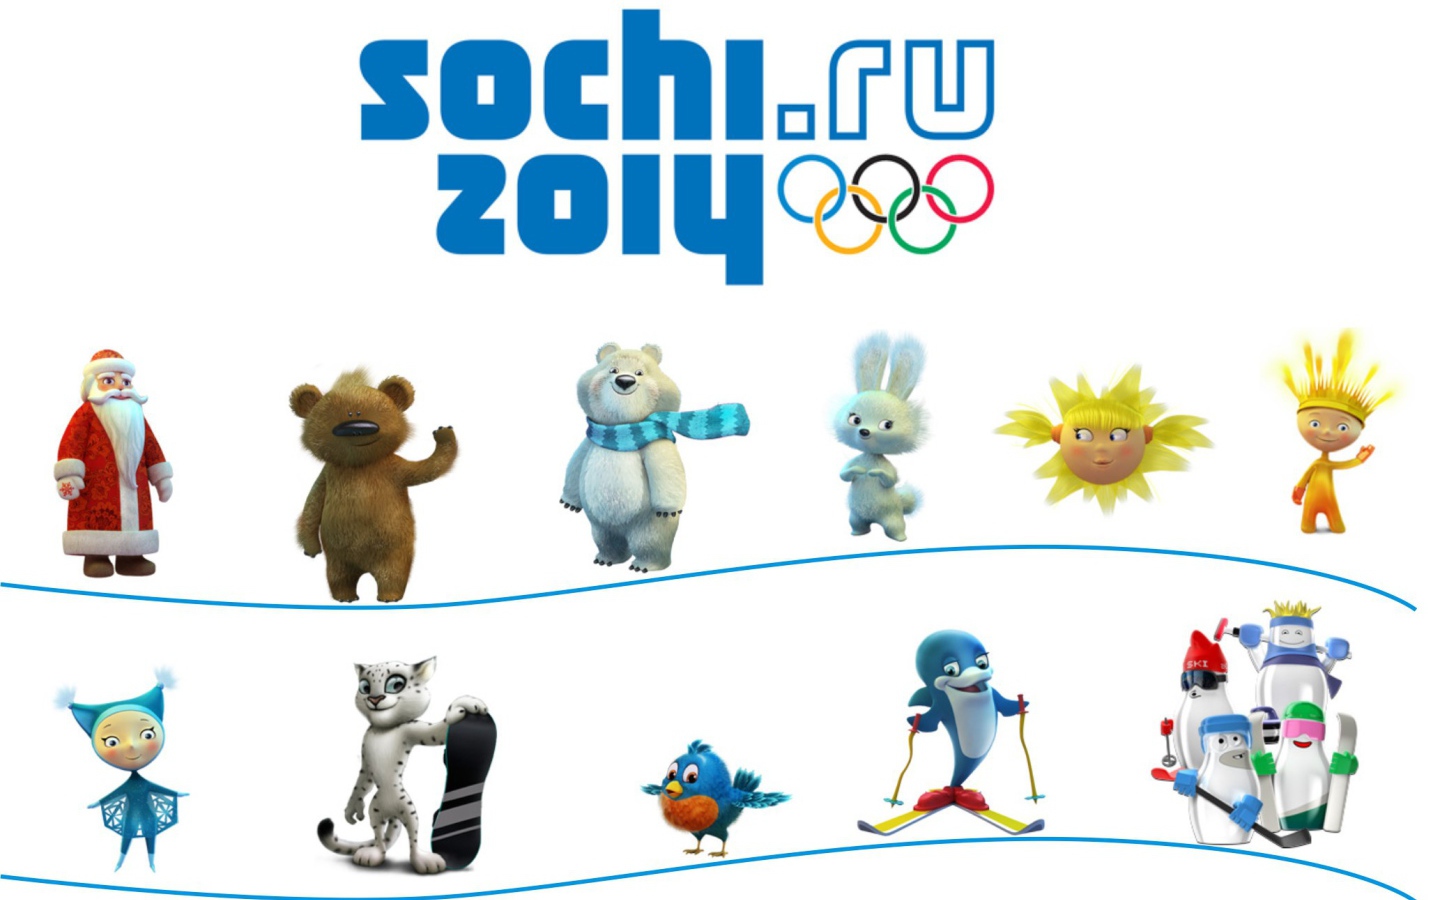 Symbols Olympics in Sochi 2014